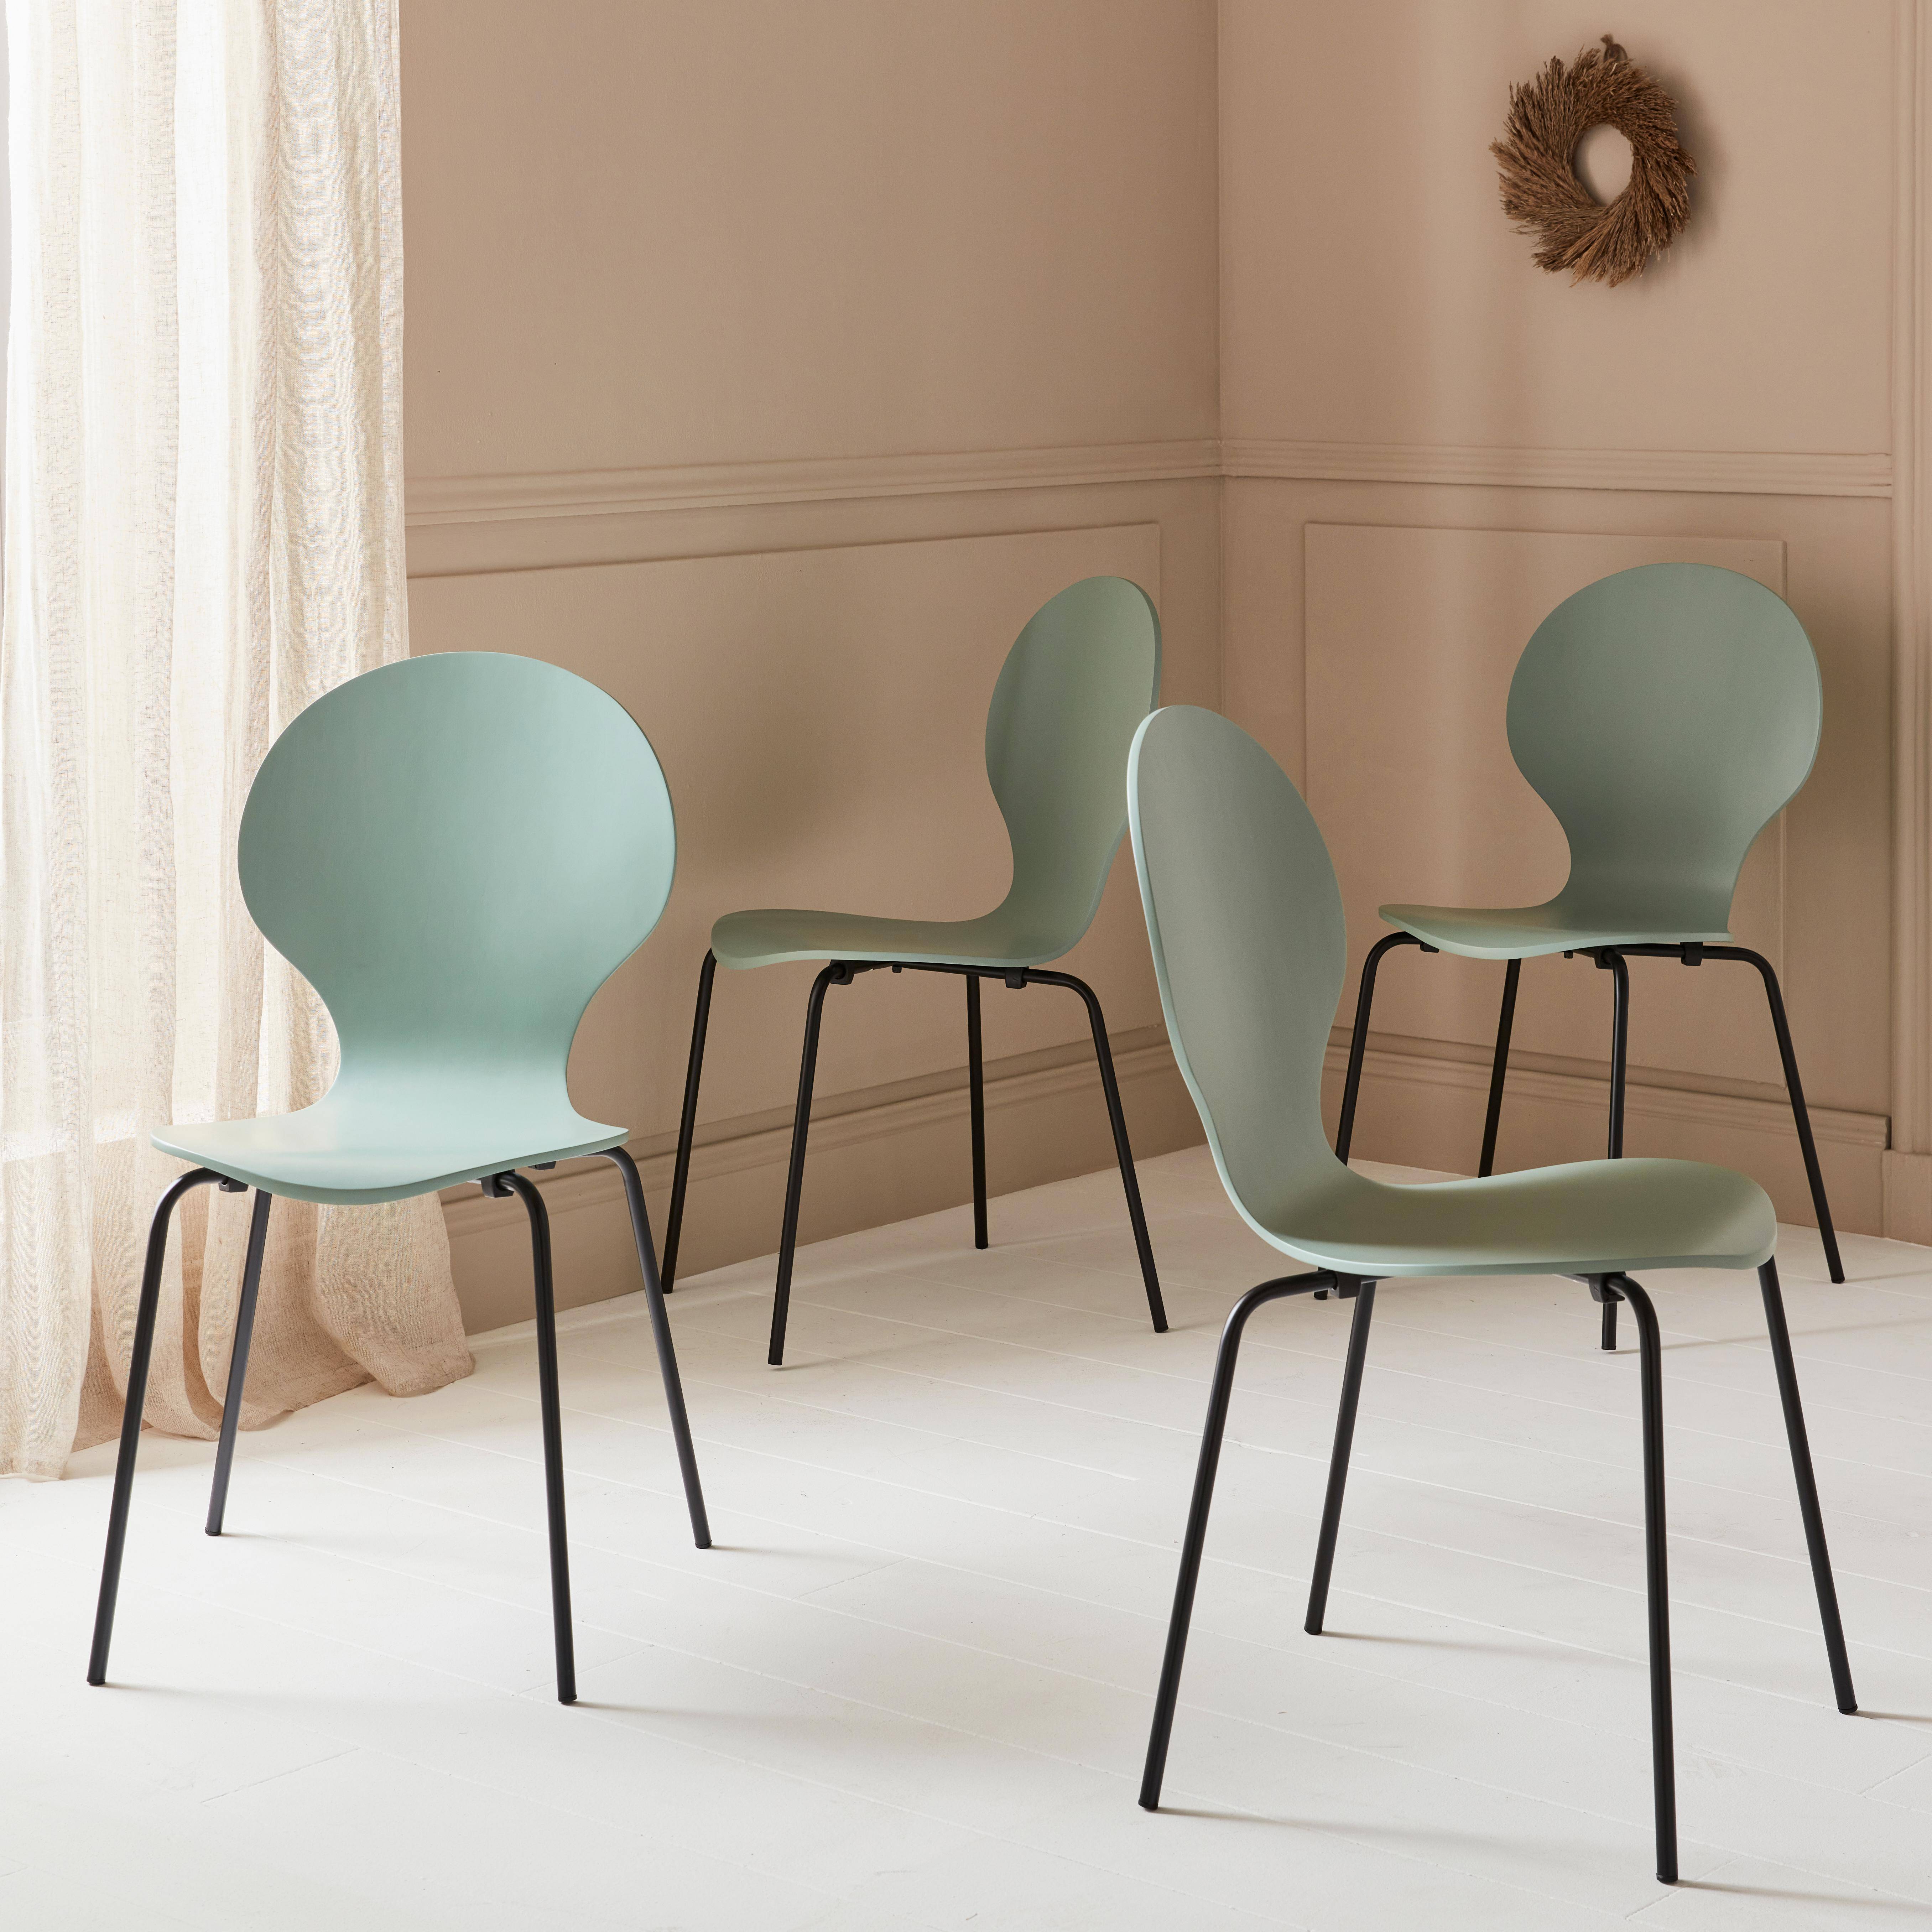 Lot de 4 chaises vert céladon, rétro empilables, bois d'hévéa et contreplaqué, pieds en acier, Naomi, L 43 x P 48 x H 87cm,sweeek,Photo2